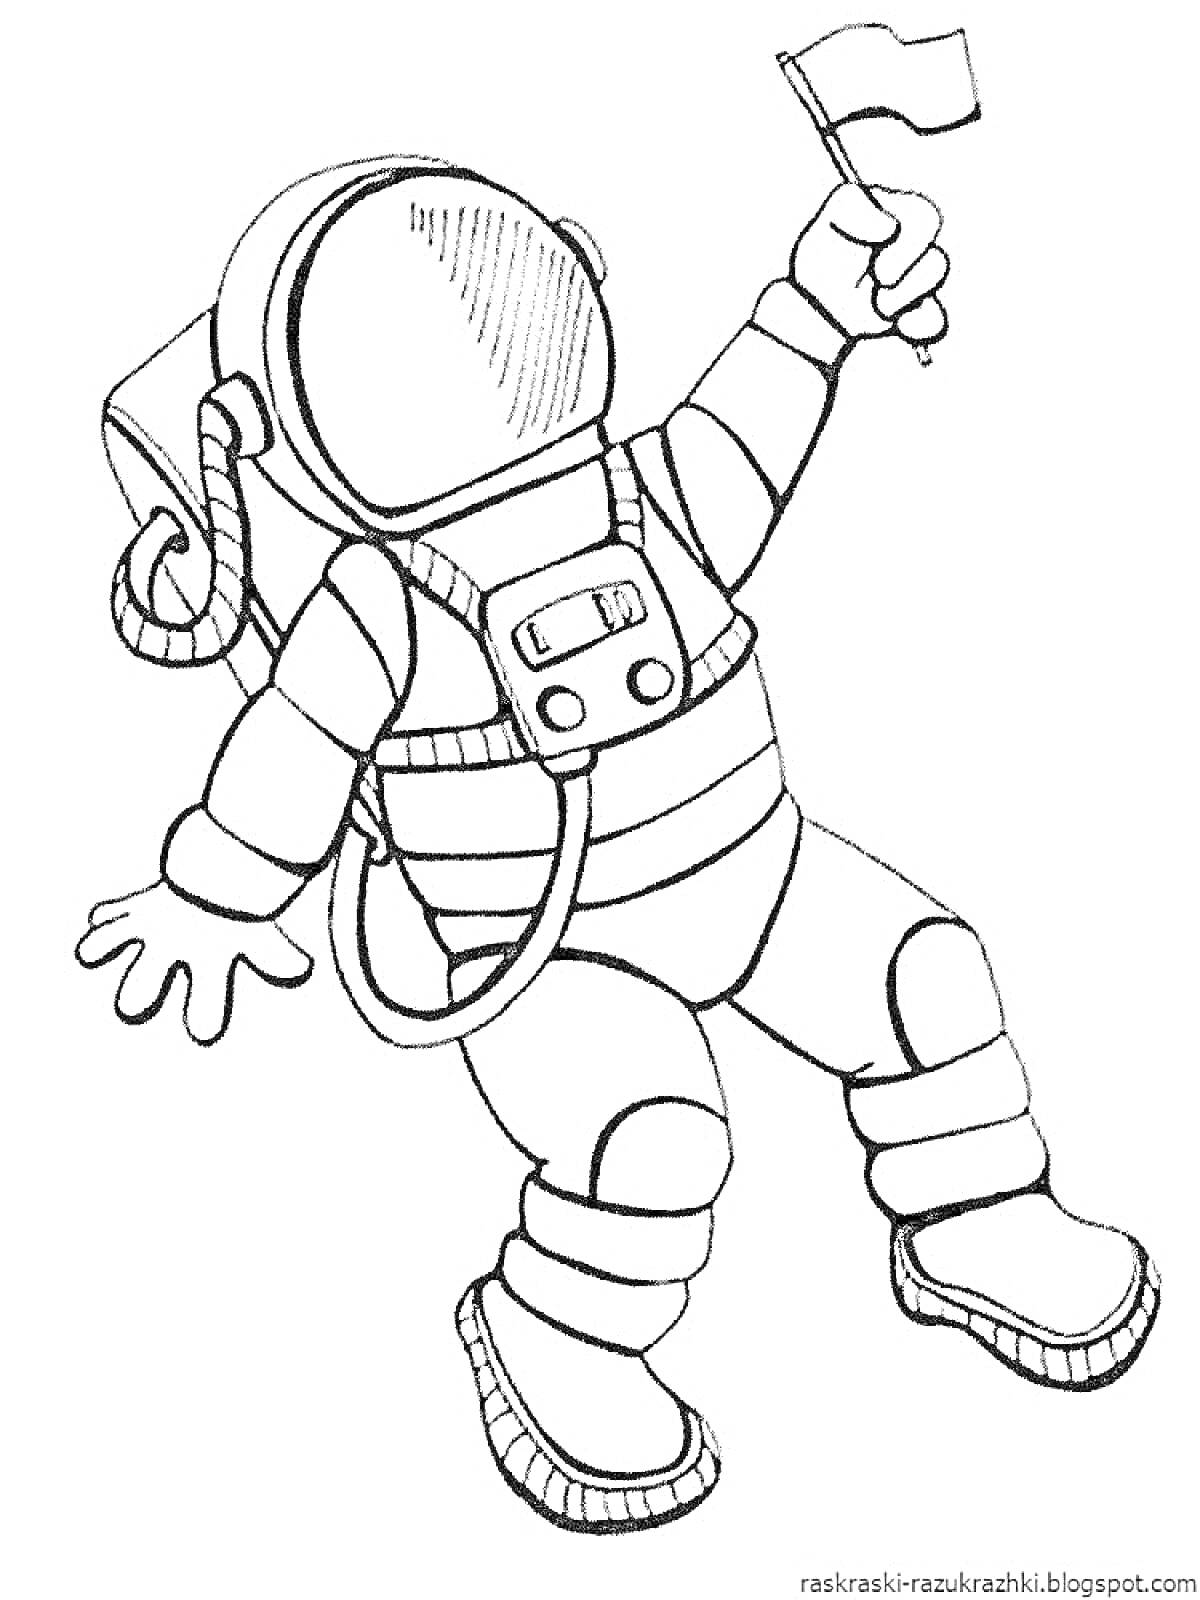 Раскраска Космонавт с флагом из игры Бравел Старс, в скафандре с рацией и трубками